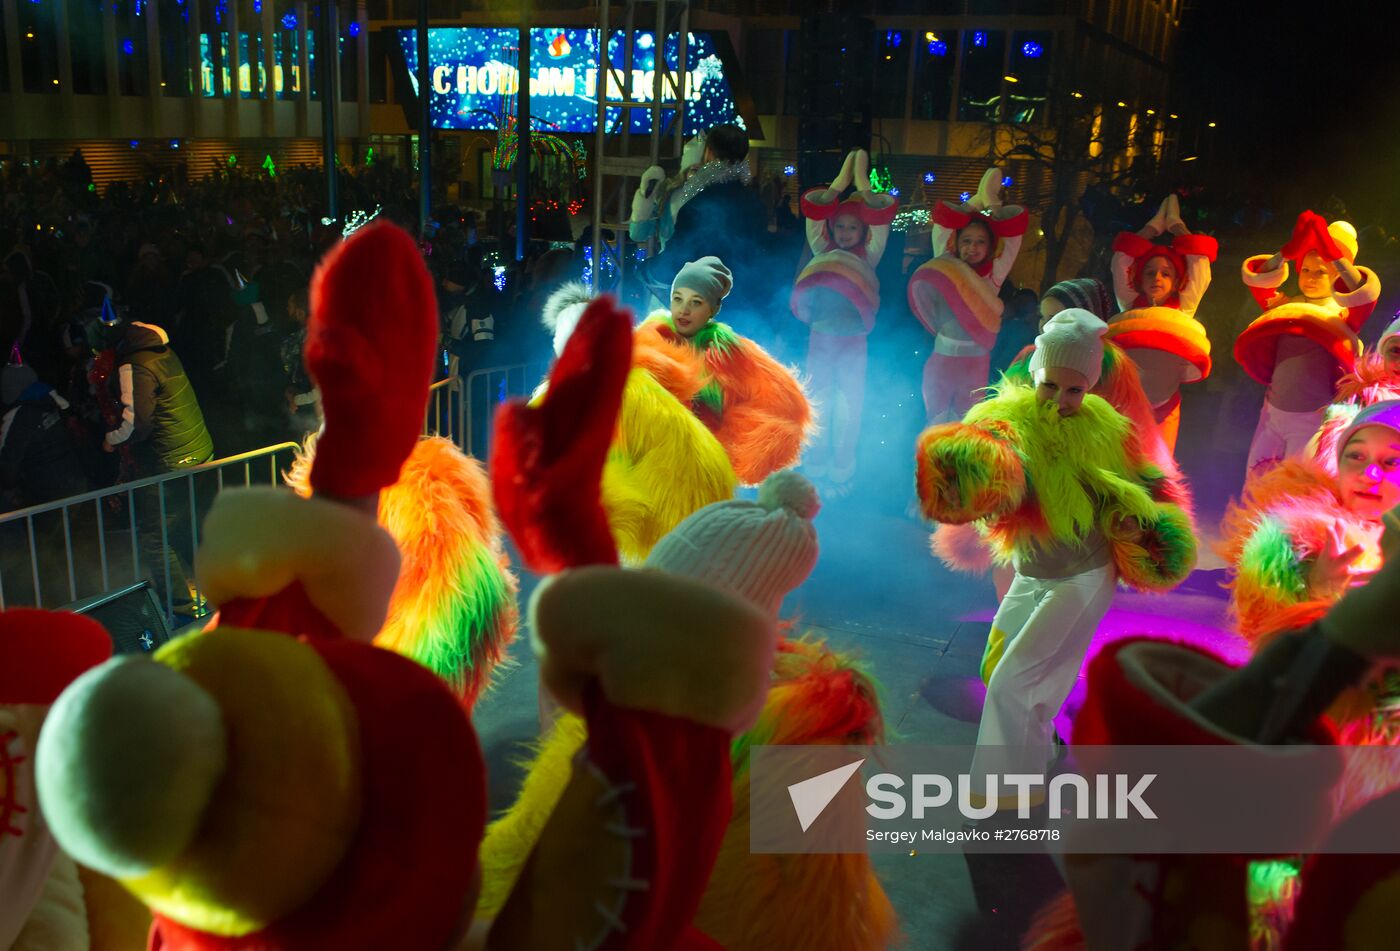 New Year celebrations in Artek